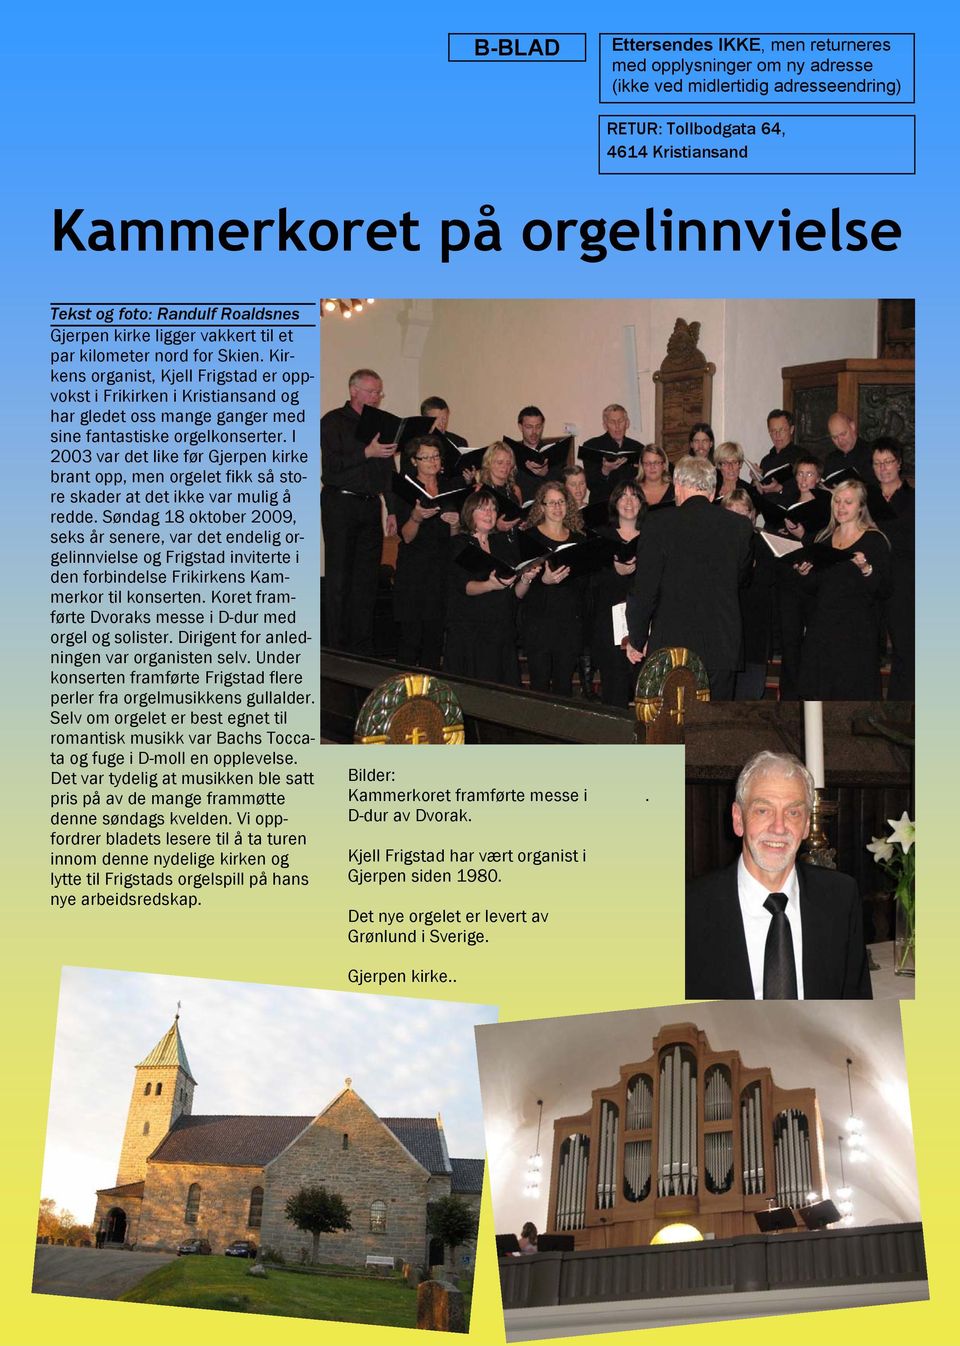 Kirkens organist, Kjell Frigstad er oppvokst i Frikirken i Kristiansand og har gledet oss mange ganger med sine fantastiske orgelkonserter.